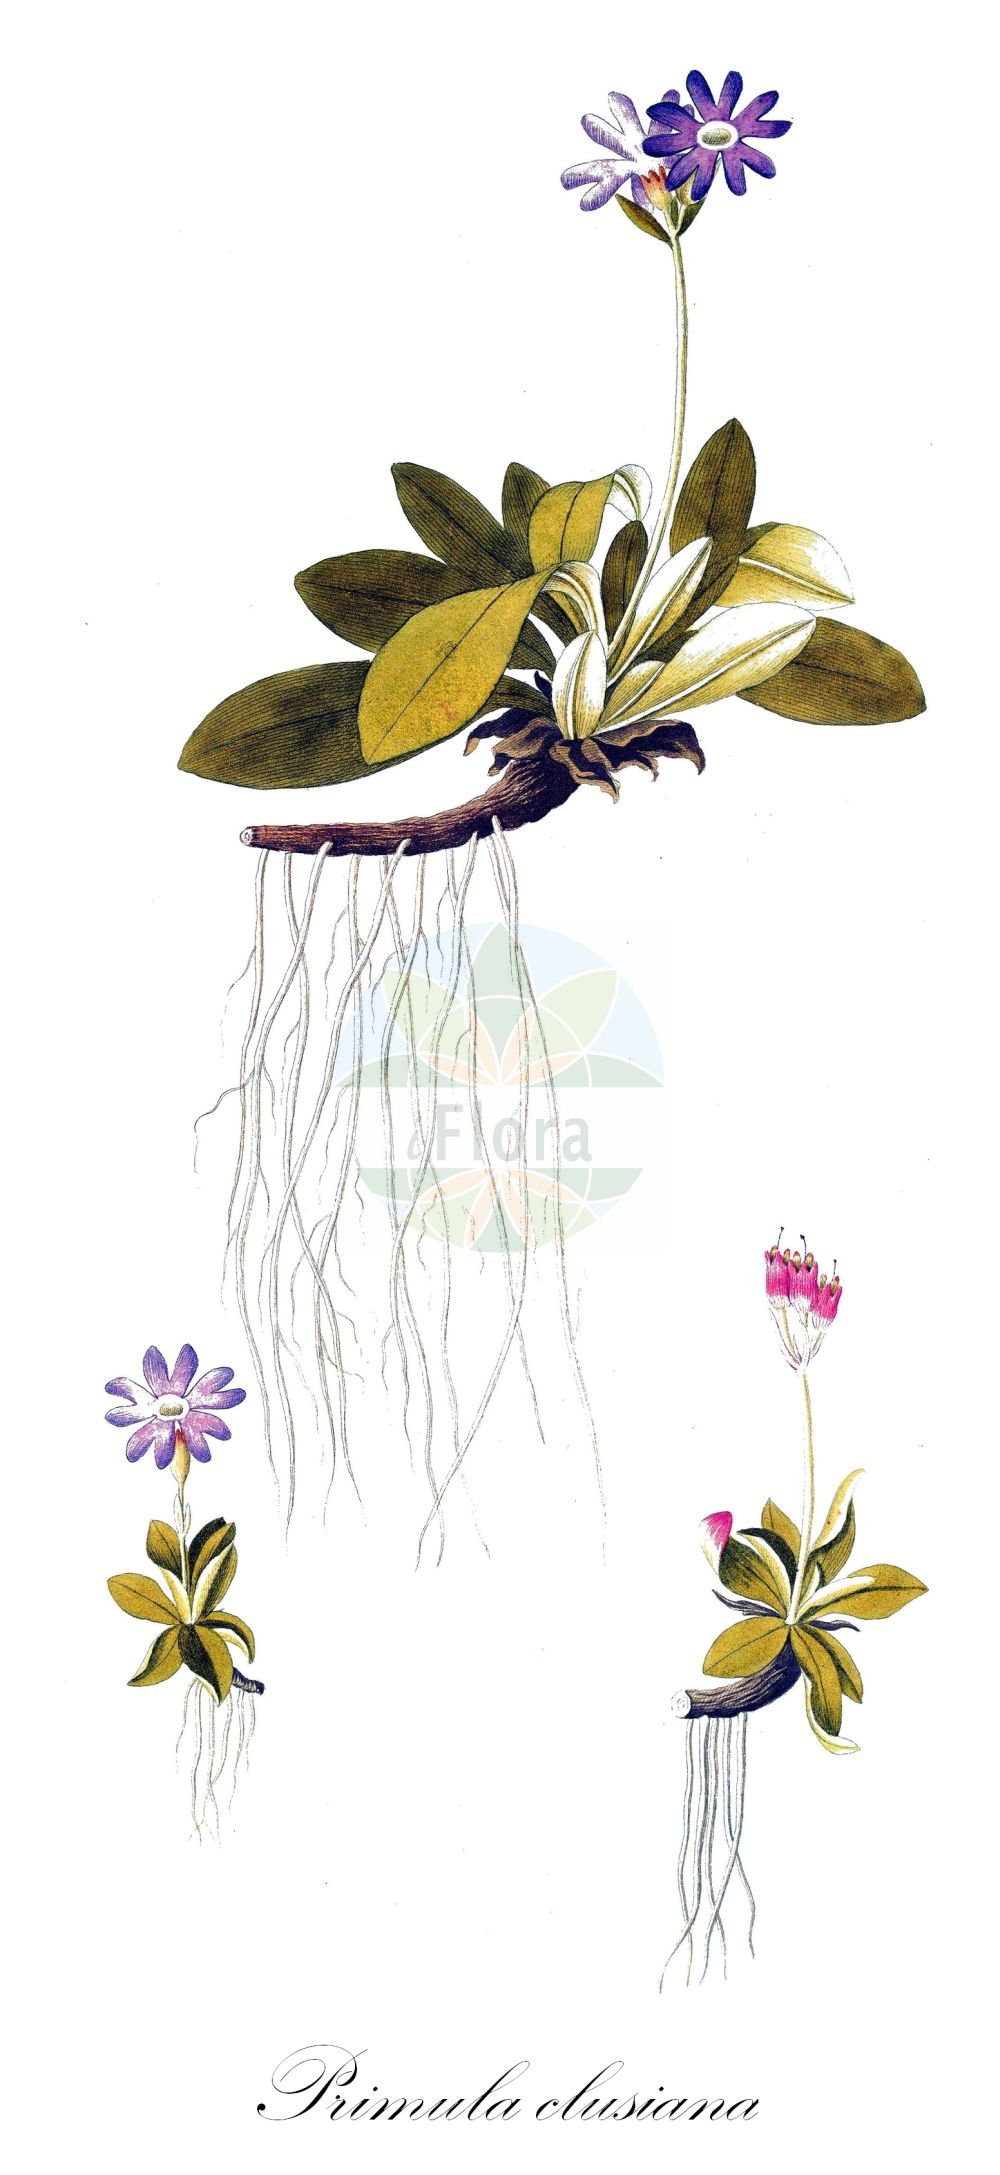 Historische Abbildung von Primula clusiana (Clusius' Schlüsselblume - Siberian Primrose). Das Bild zeigt Blatt, Bluete, Frucht und Same. ---- Historical Drawing of Primula clusiana (Clusius' Schlüsselblume - Siberian Primrose). The image is showing leaf, flower, fruit and seed.(Primula clusiana,Clusius' Schlüsselblume,Siberian Primrose,Primula clusiana,Clusius' Schluesselblume,Nickende Primel,Siberian Primrose,Primula,Schlüsselblume,Primrose,Primulaceae,Schlüsselblumengewächse,Primrose family,Blatt,Bluete,Frucht,Same,leaf,flower,fruit,seed)